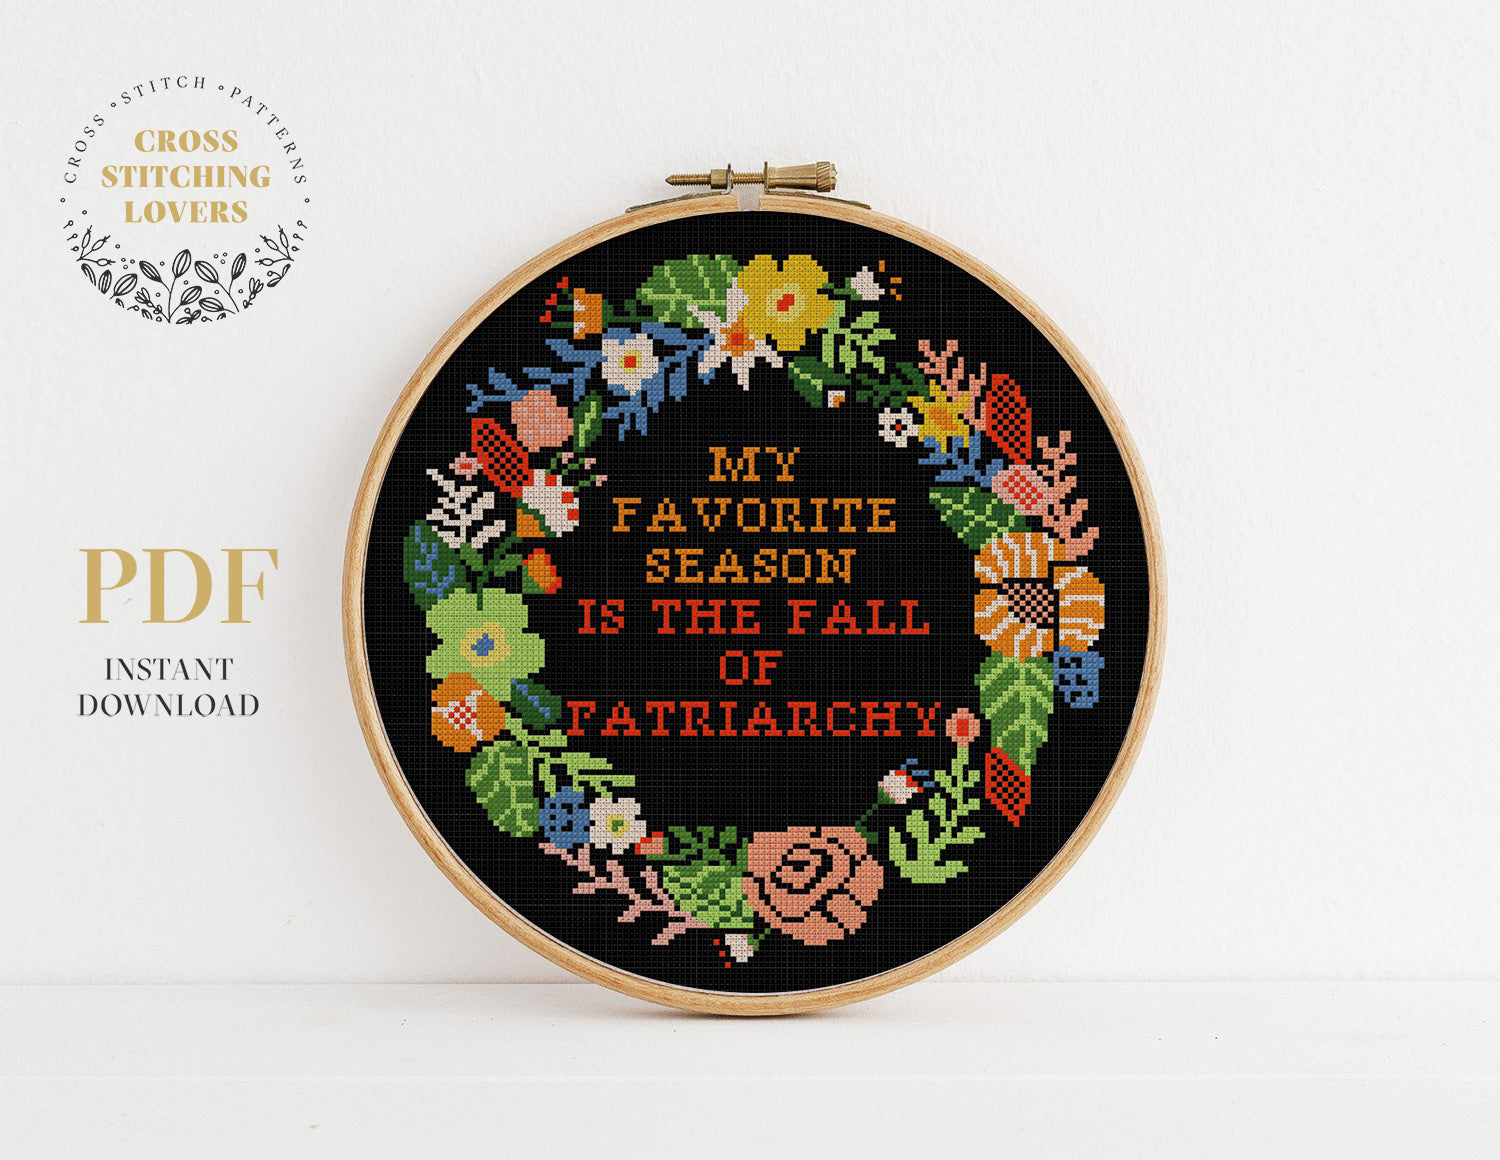 Fall of Patriarchy - Cross stitch pattern